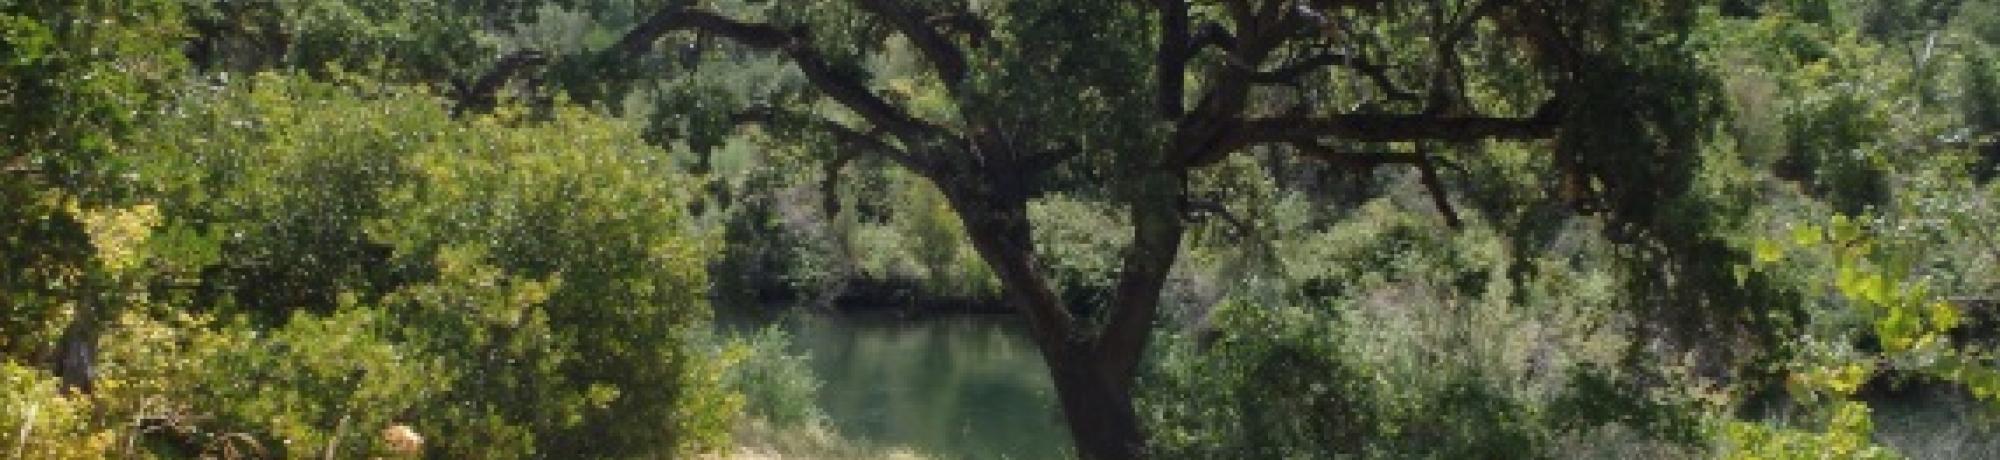 Putah Creek image